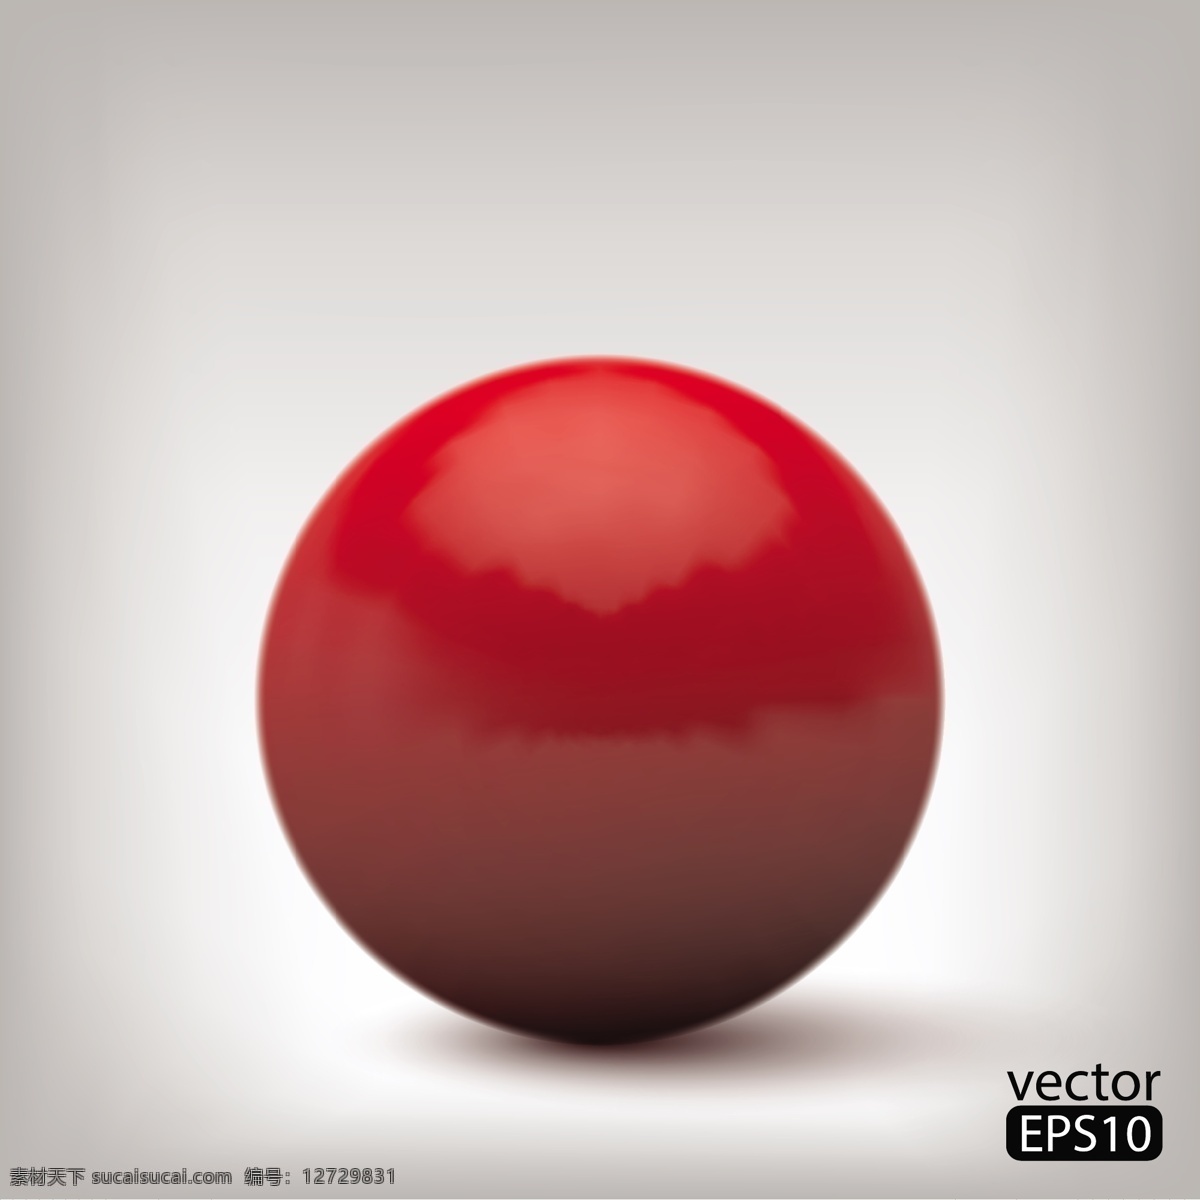 红色 3d 球形 背景 模板下载 圆形 水晶球 立体背景 3d背景 底纹 矢量背景 生活百科 矢量素材 灰色